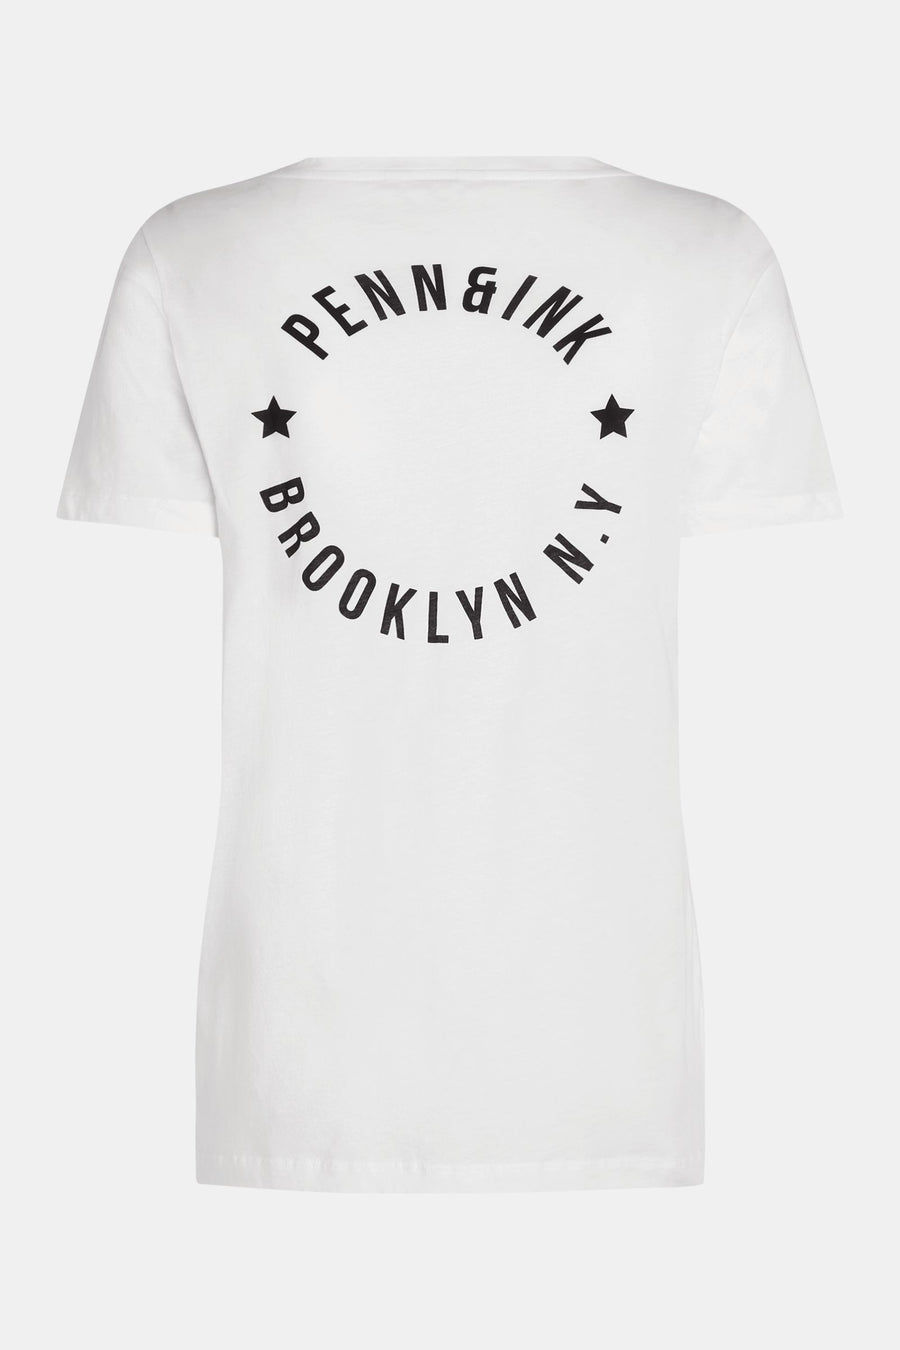 Penn&Ink - T-shirt print -s24f1429